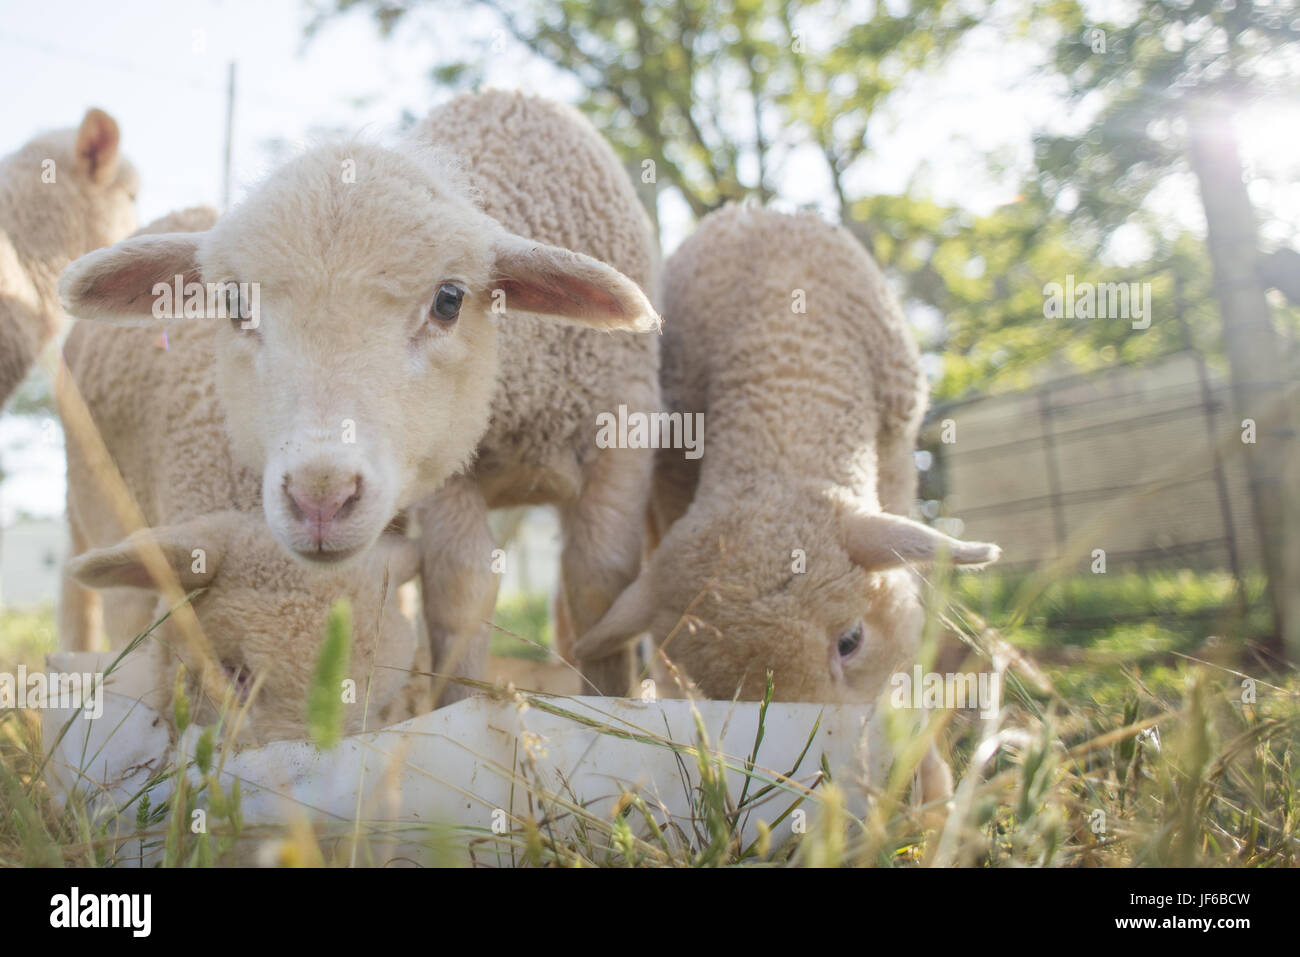 Lambs feeding from a white bucket Stock Photo